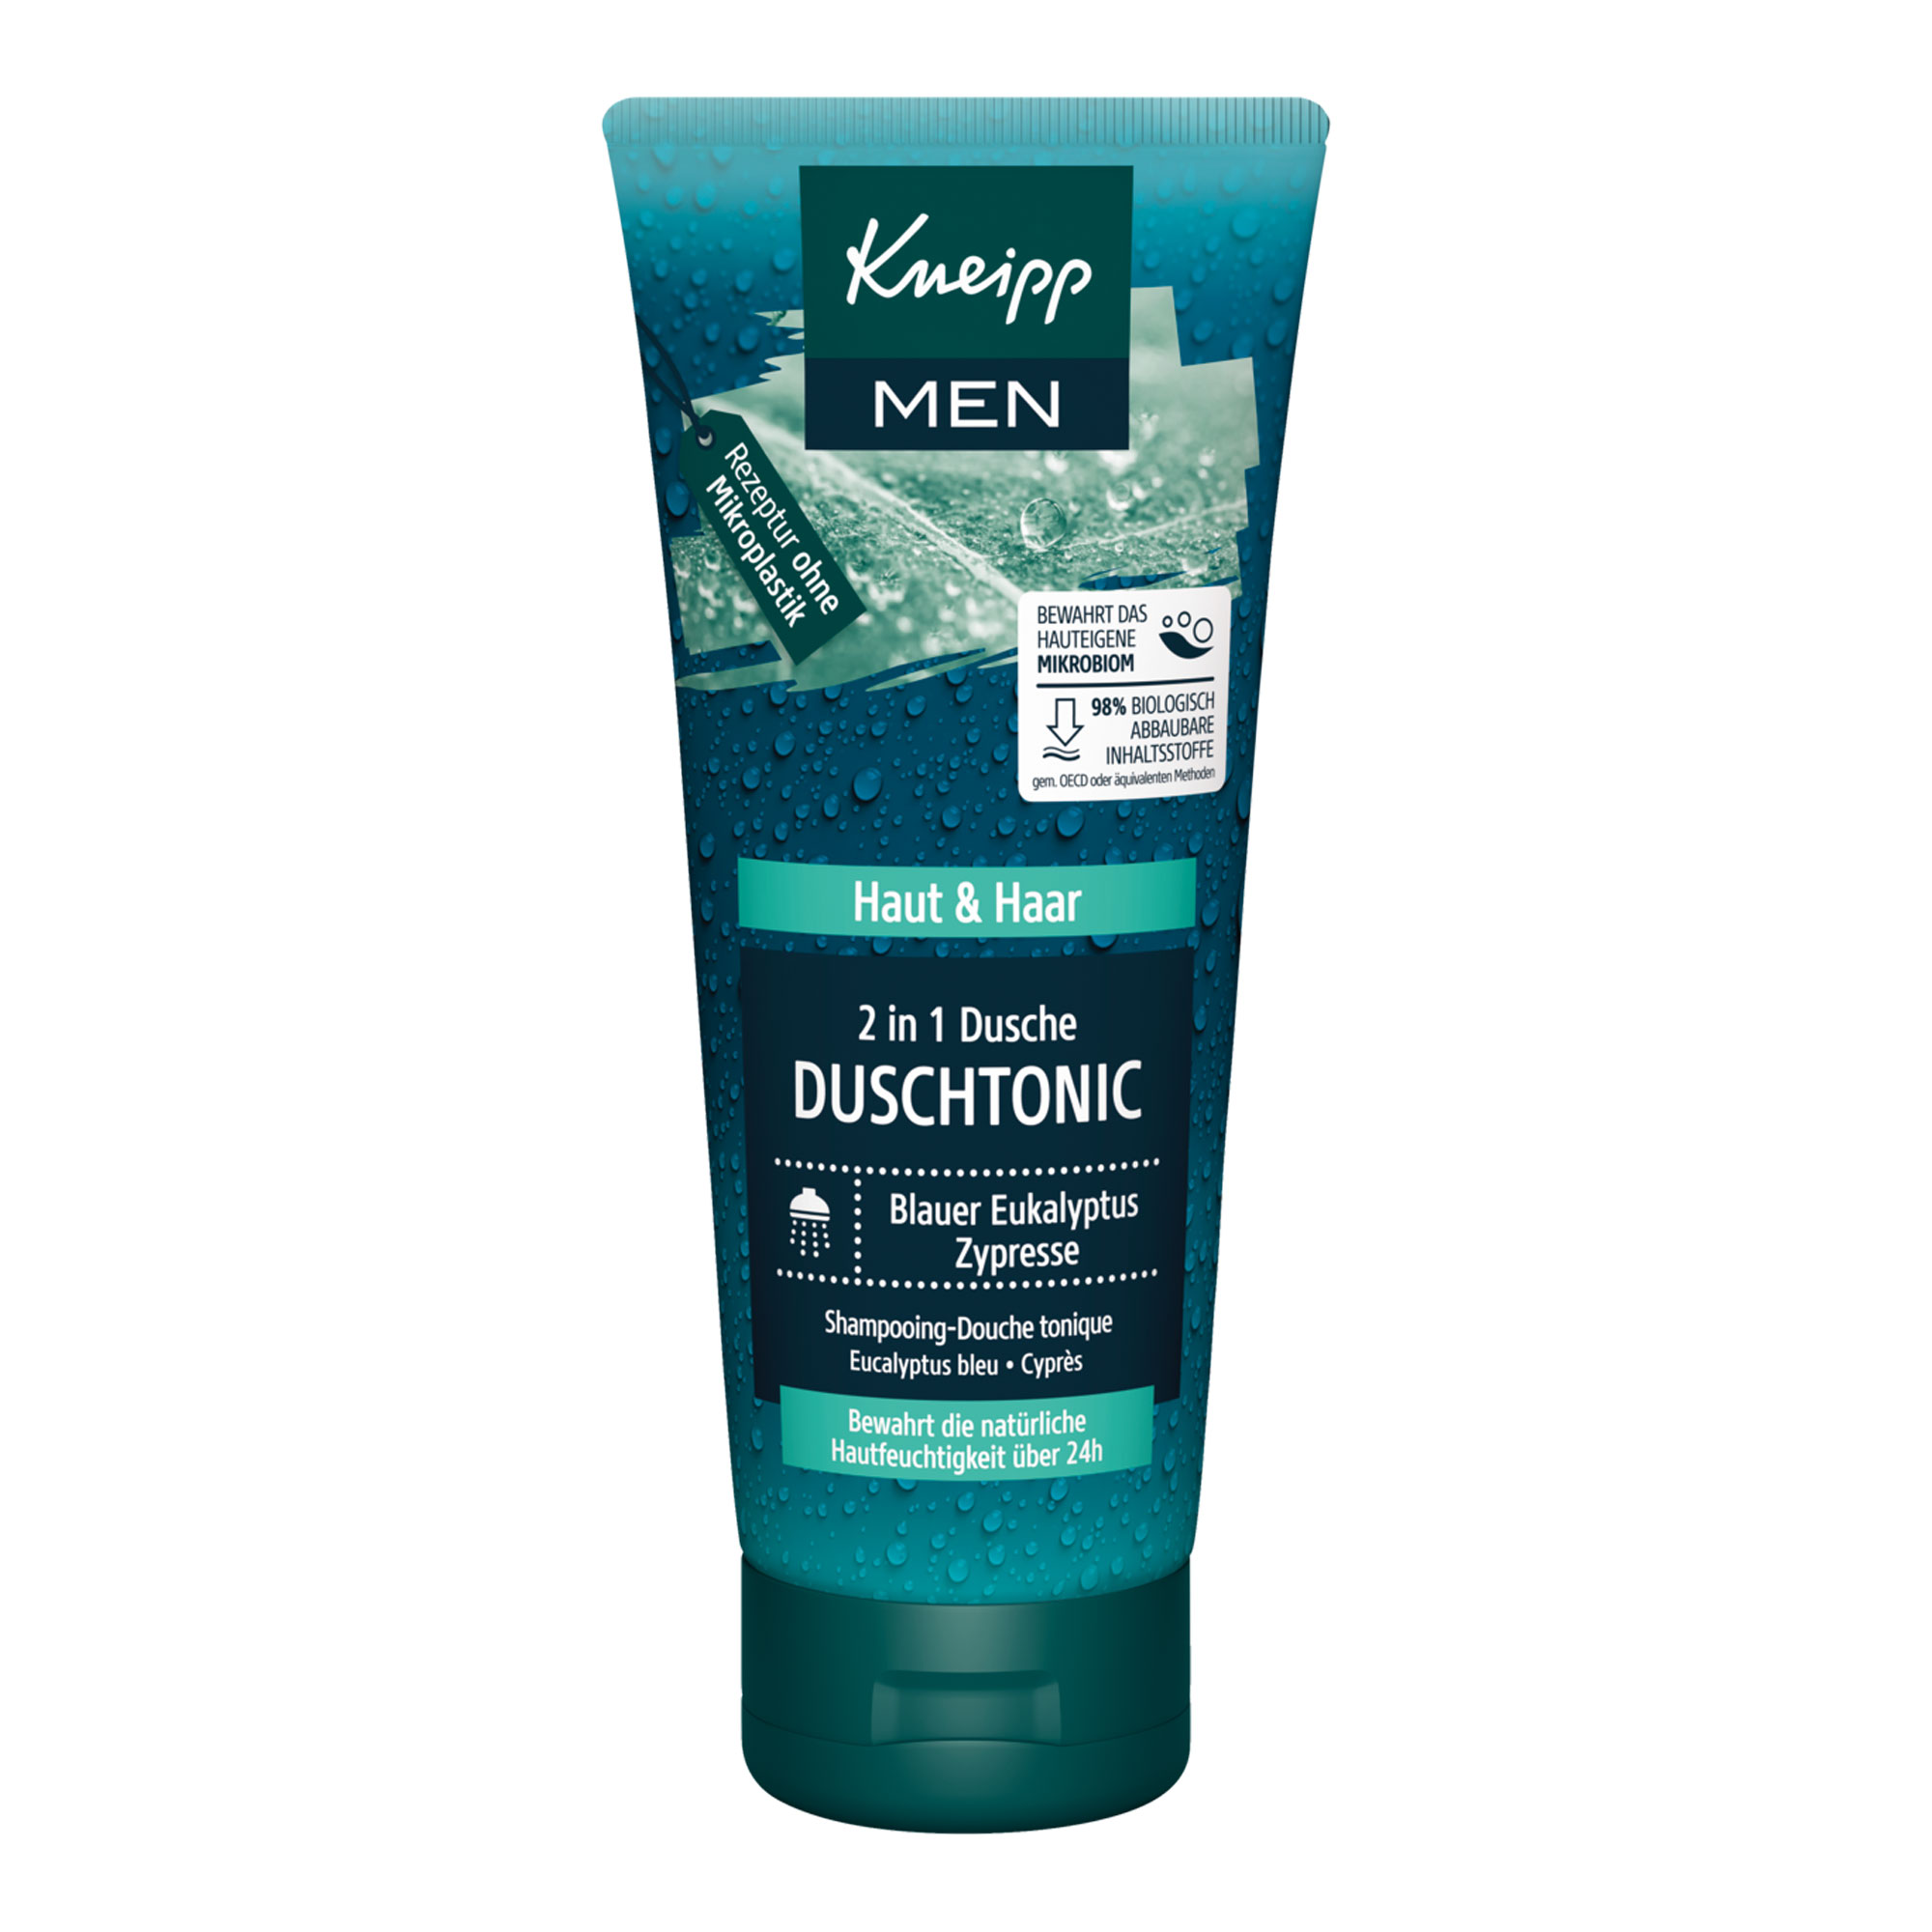 Männerpflege für Haut und Haare. Mit spritzigem Duft aus blauem Eukalyptus und würziger Zypresse.